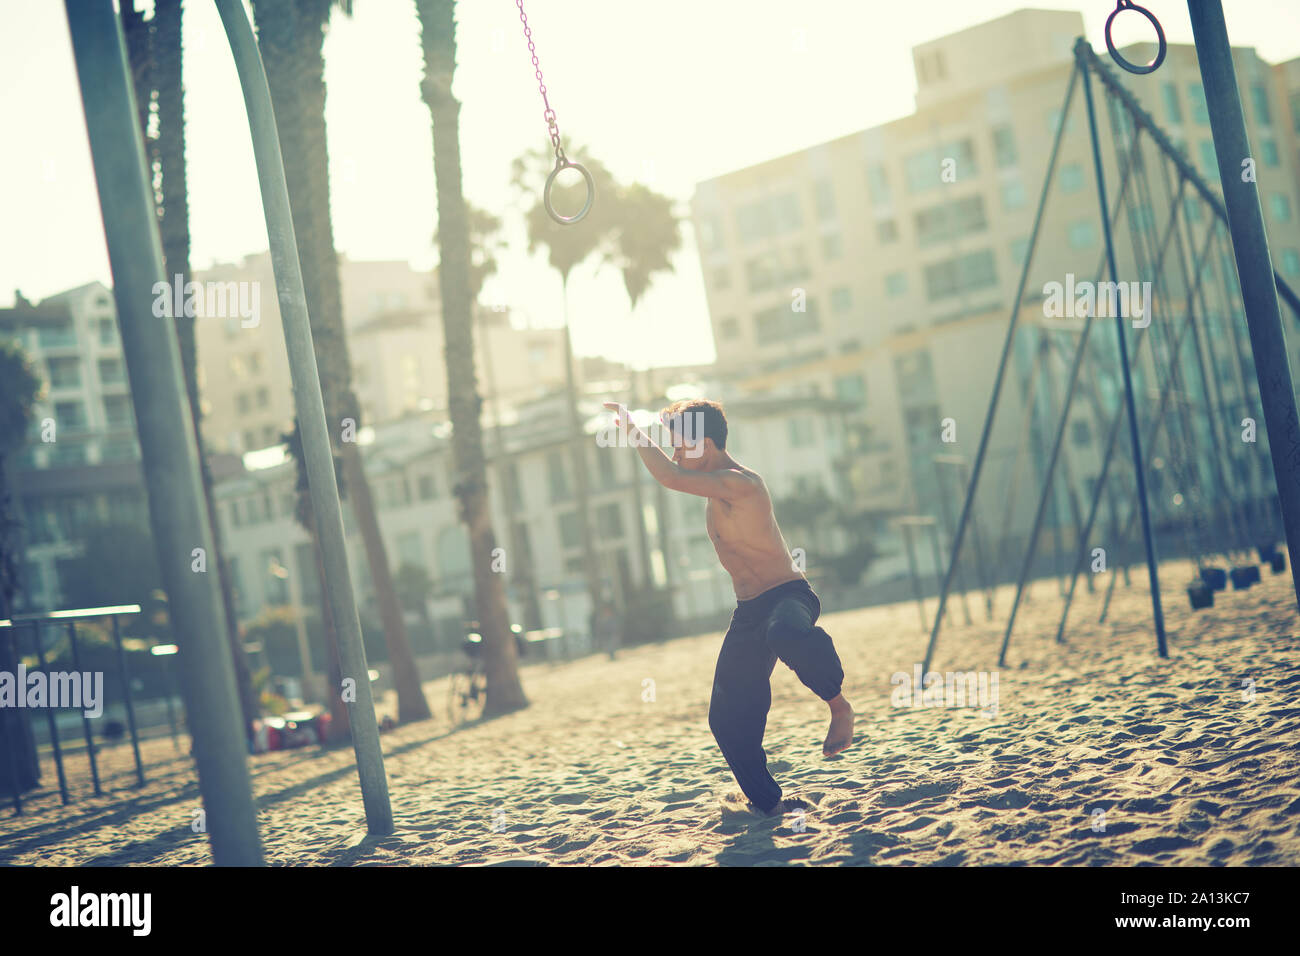 Un jeune homme sportif travaillant sur des anneaux de voyage sur Muscle Beach, Santa Monica, Californie Banque D'Images